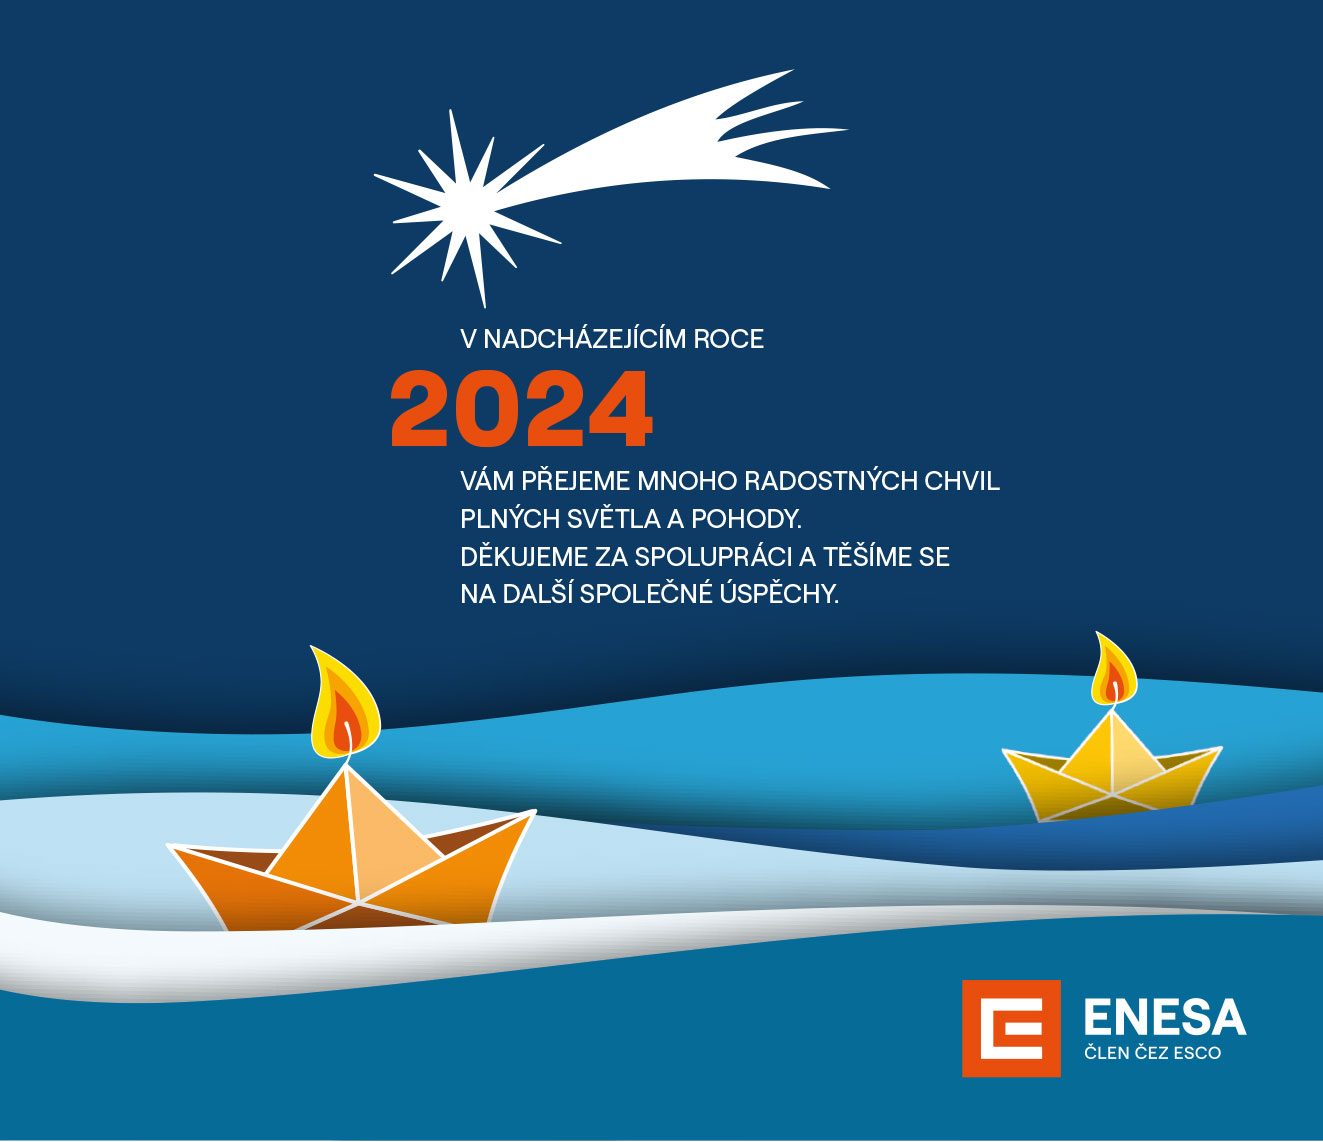 V nadcházejícím roce 2024 vám přejeme mnoho radostných chvil plných světla a pohody. Děkujeme za spolupráci a těšíme se na další společné úspěchy
Enesa a.s.